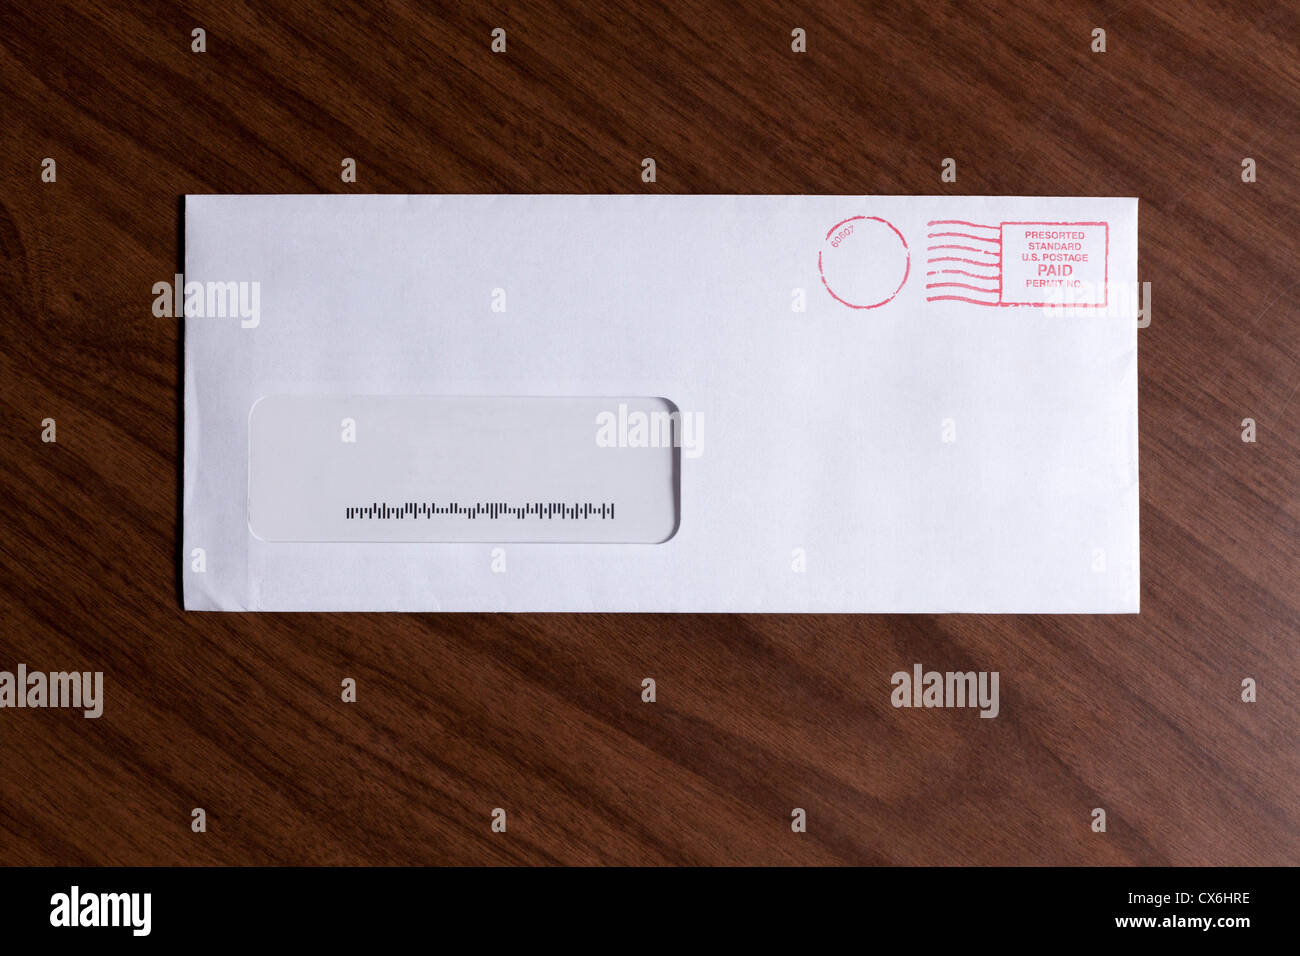 Une fenêtre enveloppe avec aucune adresse, mais un code-barres et des timbres d'encre rouge Banque D'Images